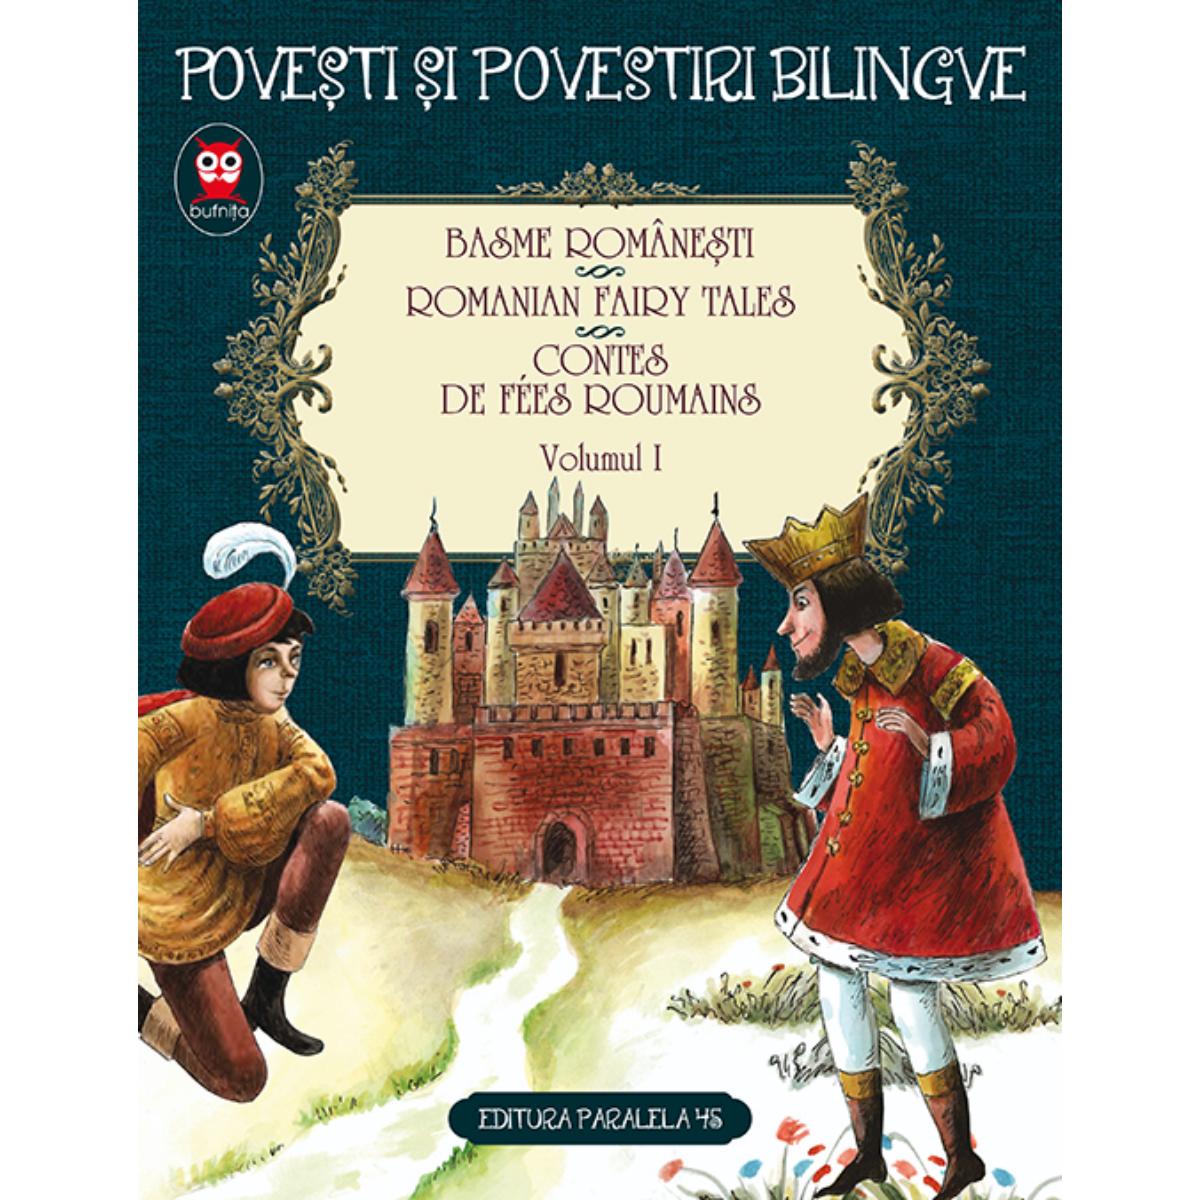 Basme bilingve romanesti, Romanian fairy tales Vol. I. Ed. 2, Petre Ispirescu, Ion Creanga